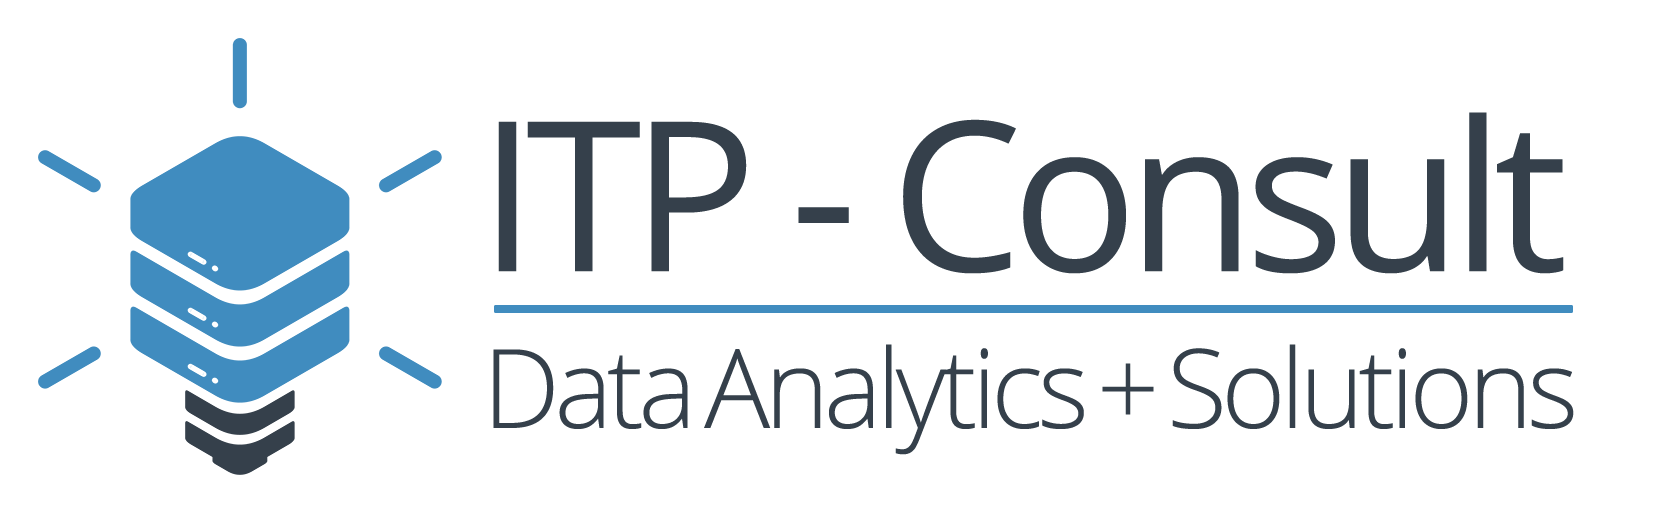 ITP-Consult GmbH